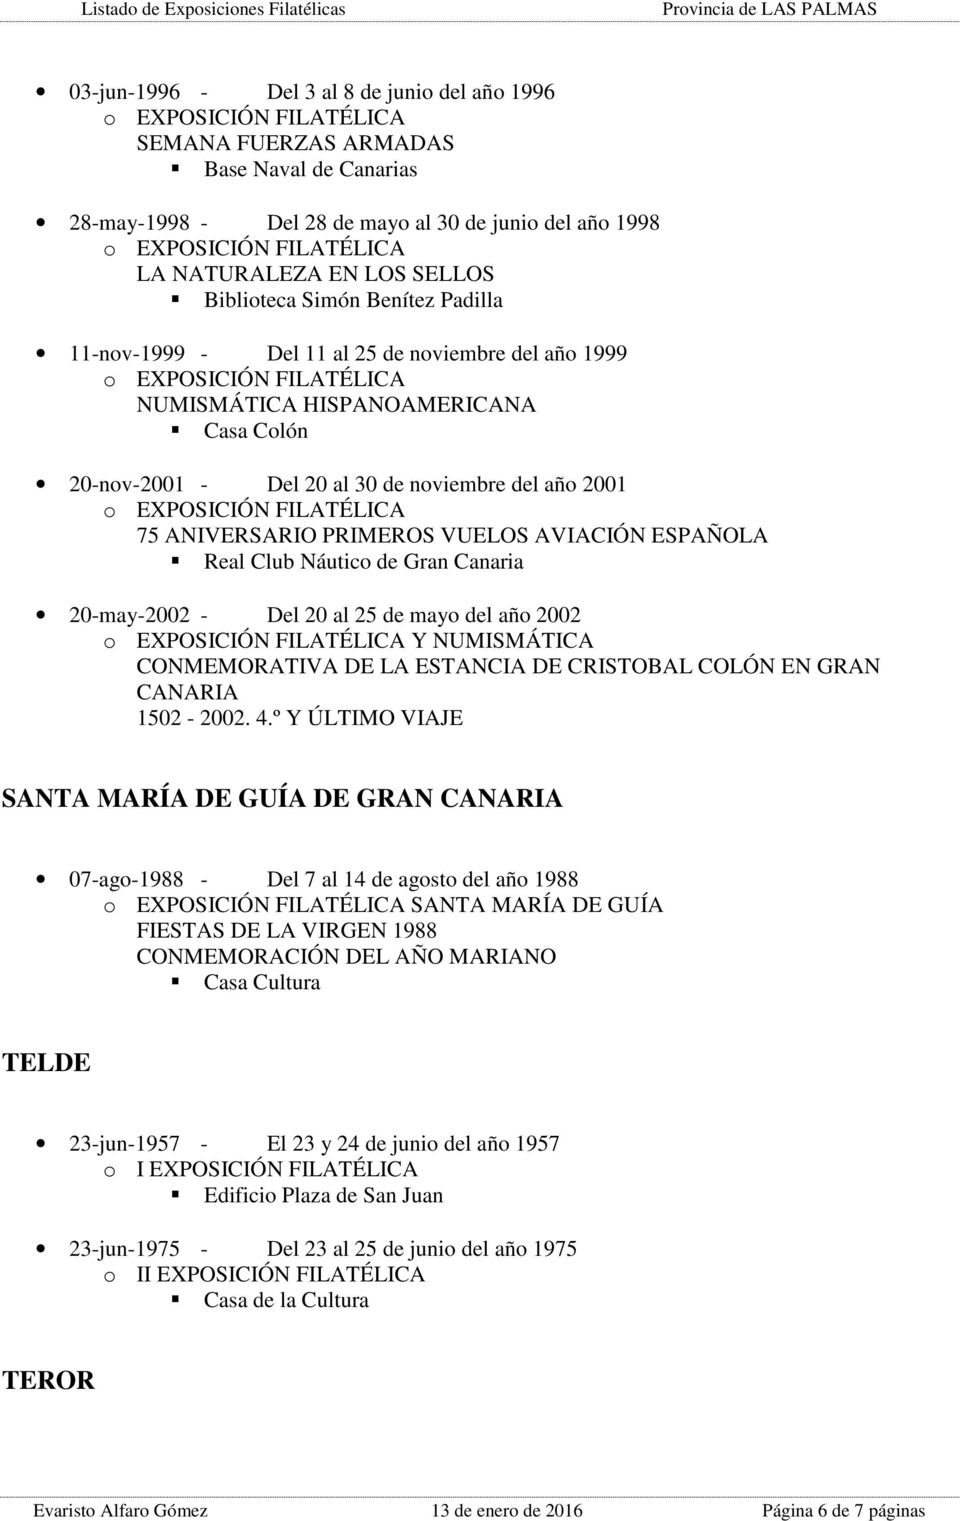 AVIACIÓN ESPAÑOLA Real Club Náutico de Gran Canaria 20-may-2002 - Del 20 al 25 de mayo del año 2002 Y NUMISMÁTICA CONMEMORATIVA DE LA ESTANCIA DE CRISTOBAL COLÓN EN GRAN CANARIA 1502-2002. 4.